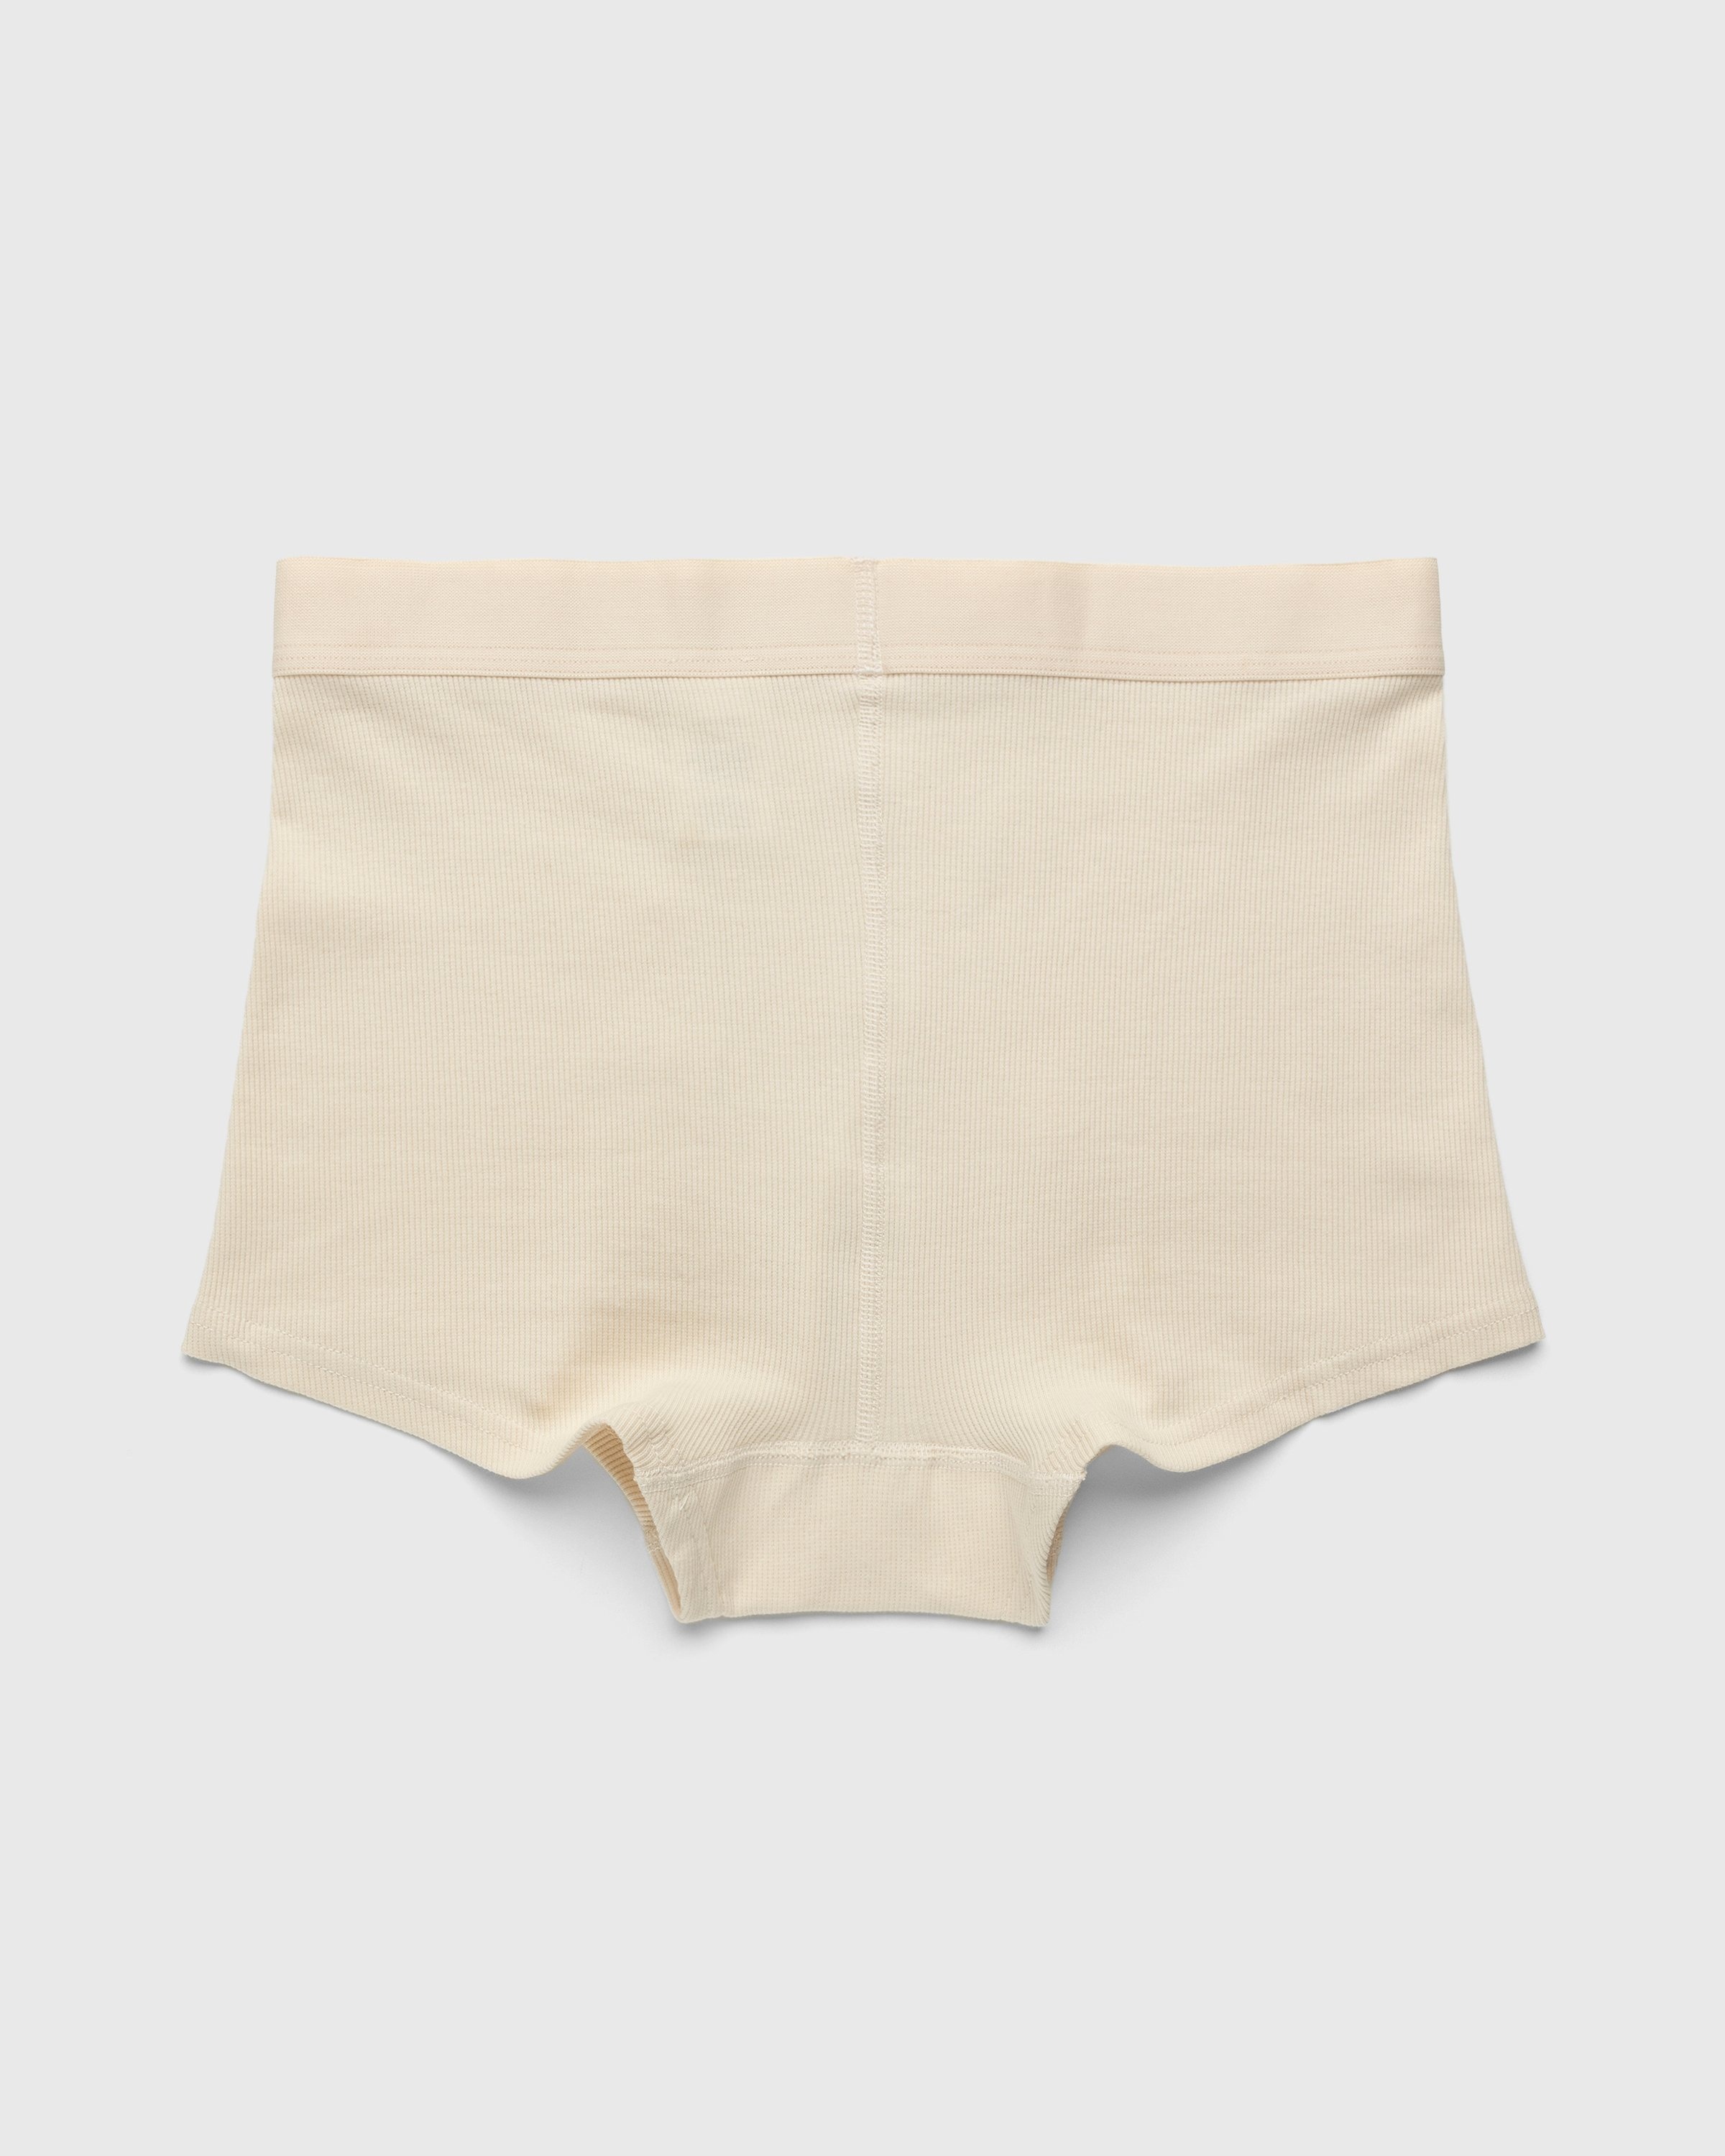 Marine Serre – Organic Cotton Ribbed Boxers Beige - Underwear - Beige - Image 6